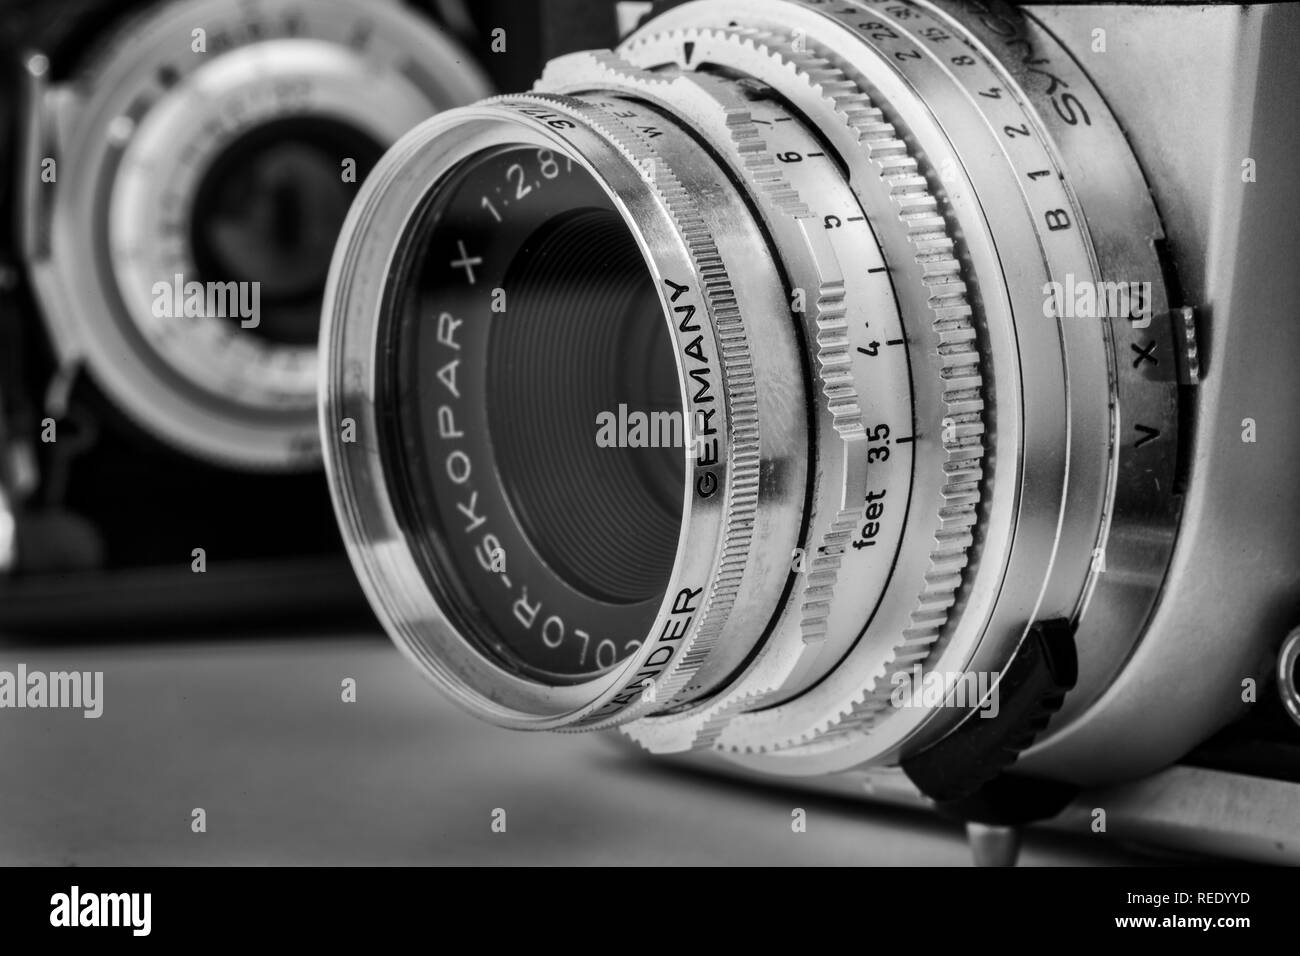 A Voigtlander Bessamatic 50mm lens Stock Photo